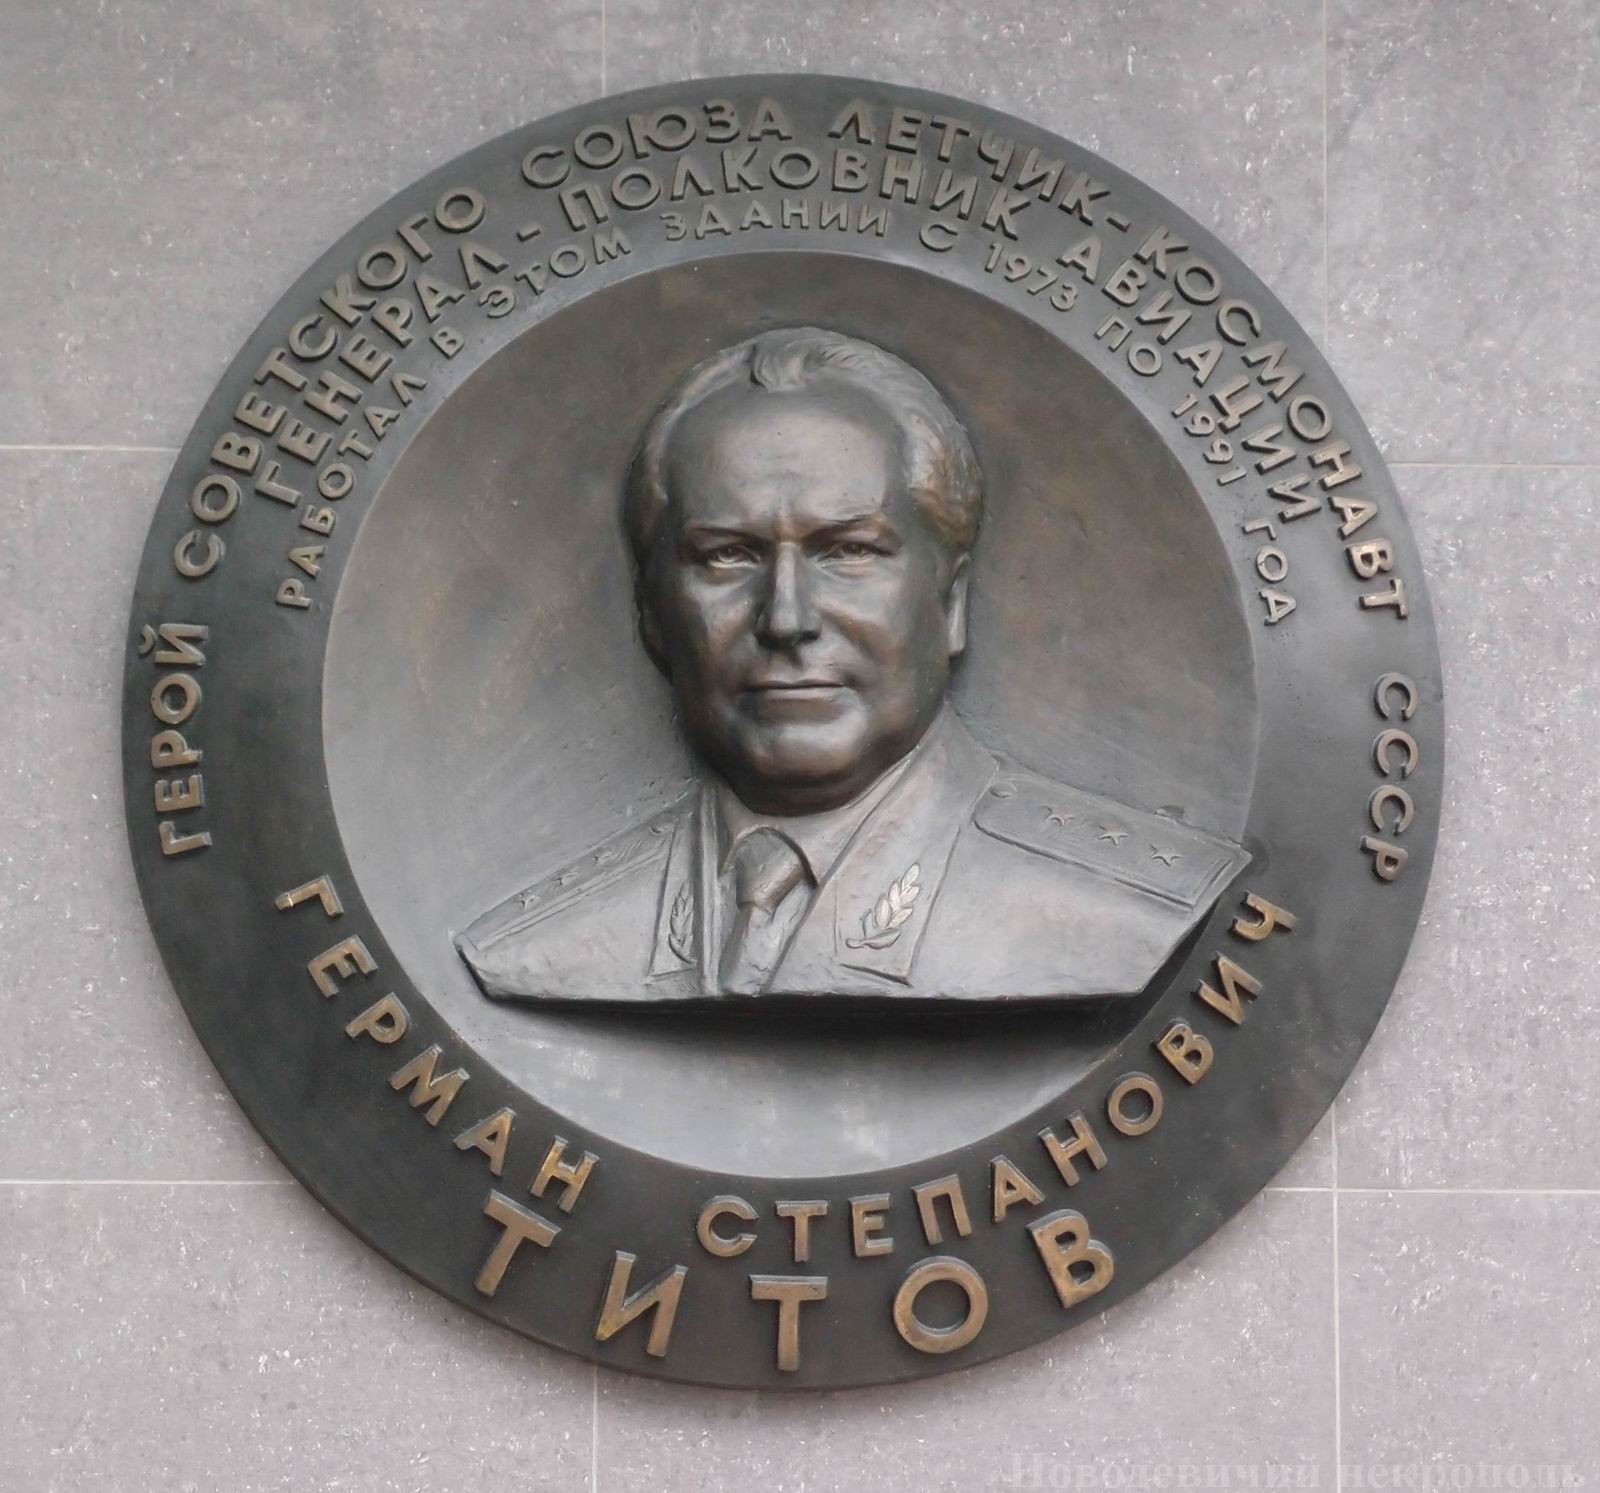 Мемориальная доска Титову Г.С. (1935–2000), ск. А.Бичуков, арх. М.Корси, на Профсоюзной улице, дом 84, открыта в 2007.